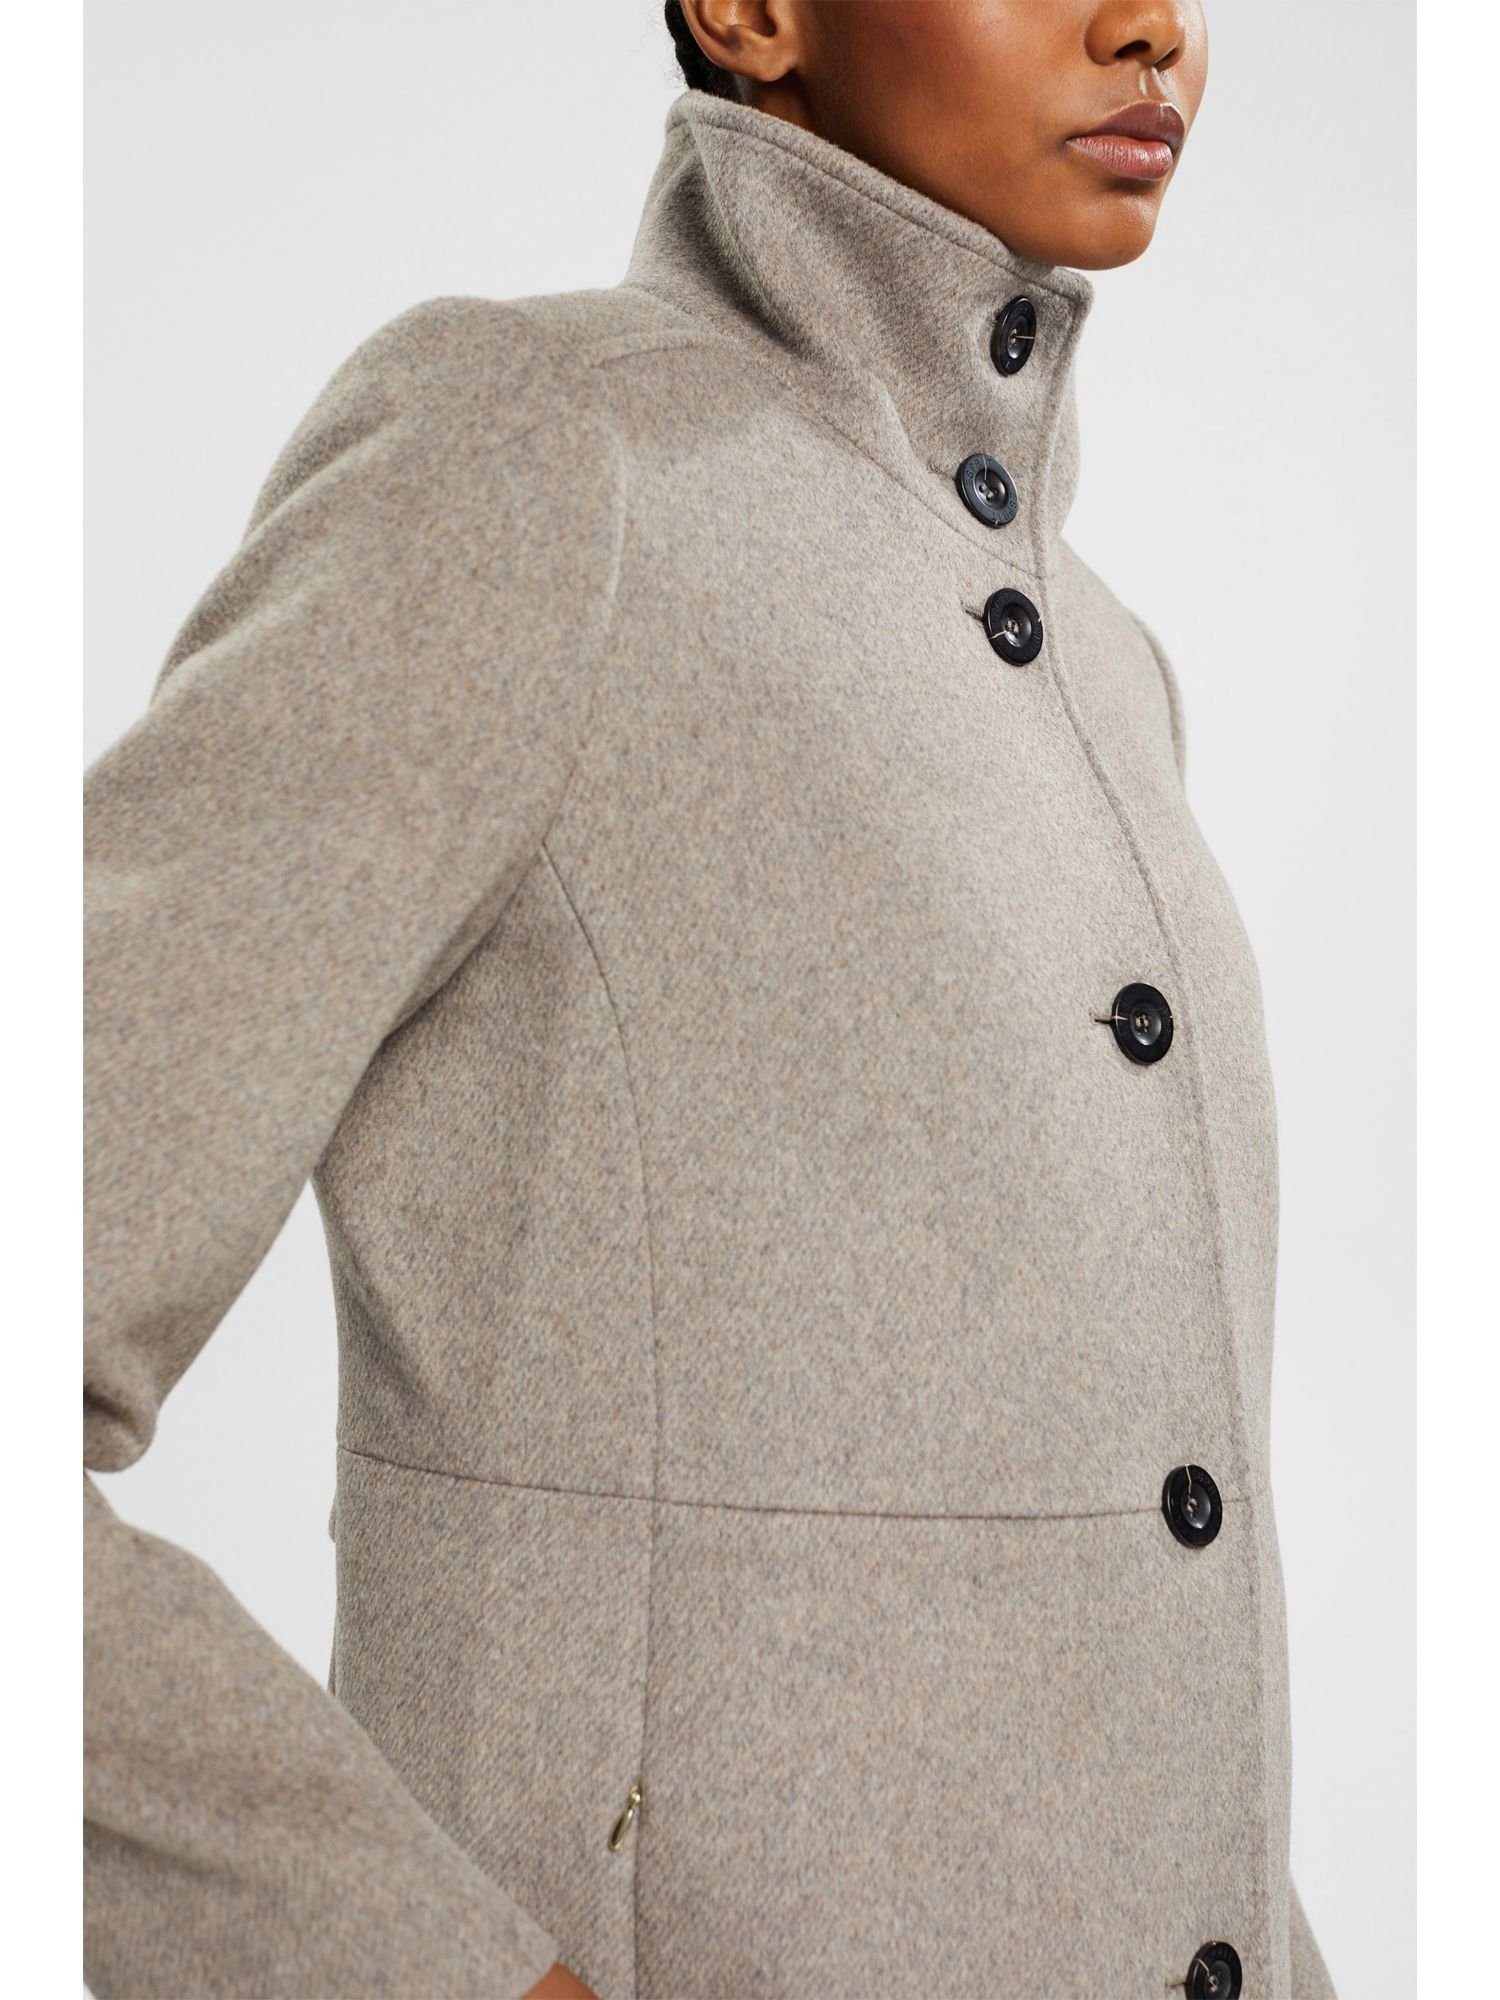 Mantel angerauter Wollmantel Collection Wolle weich aus Esprit